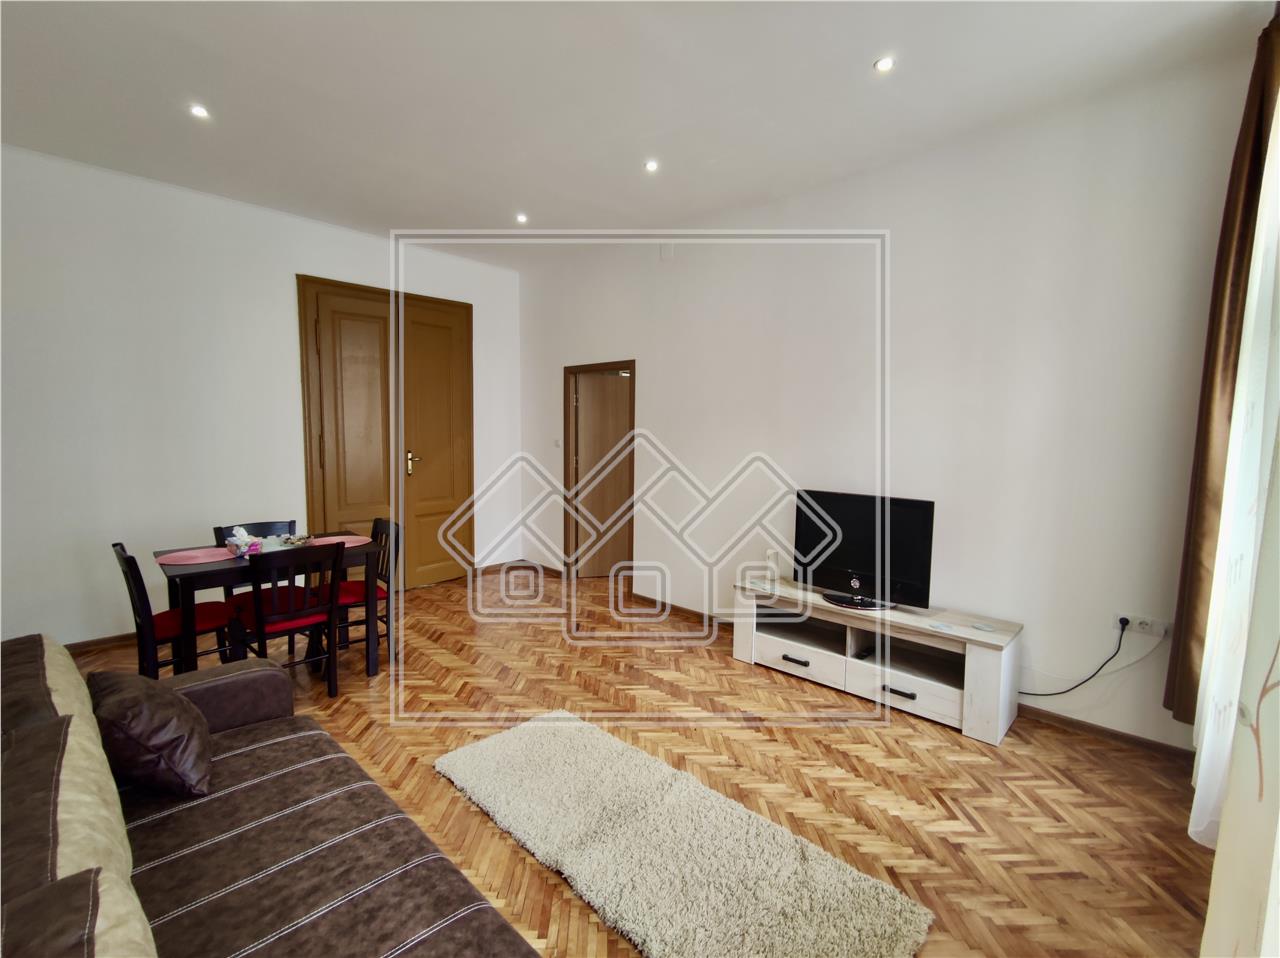 Wohnung zu verkaufen in Sibiu - 2 Zimmer - ideal f?r Investitionen